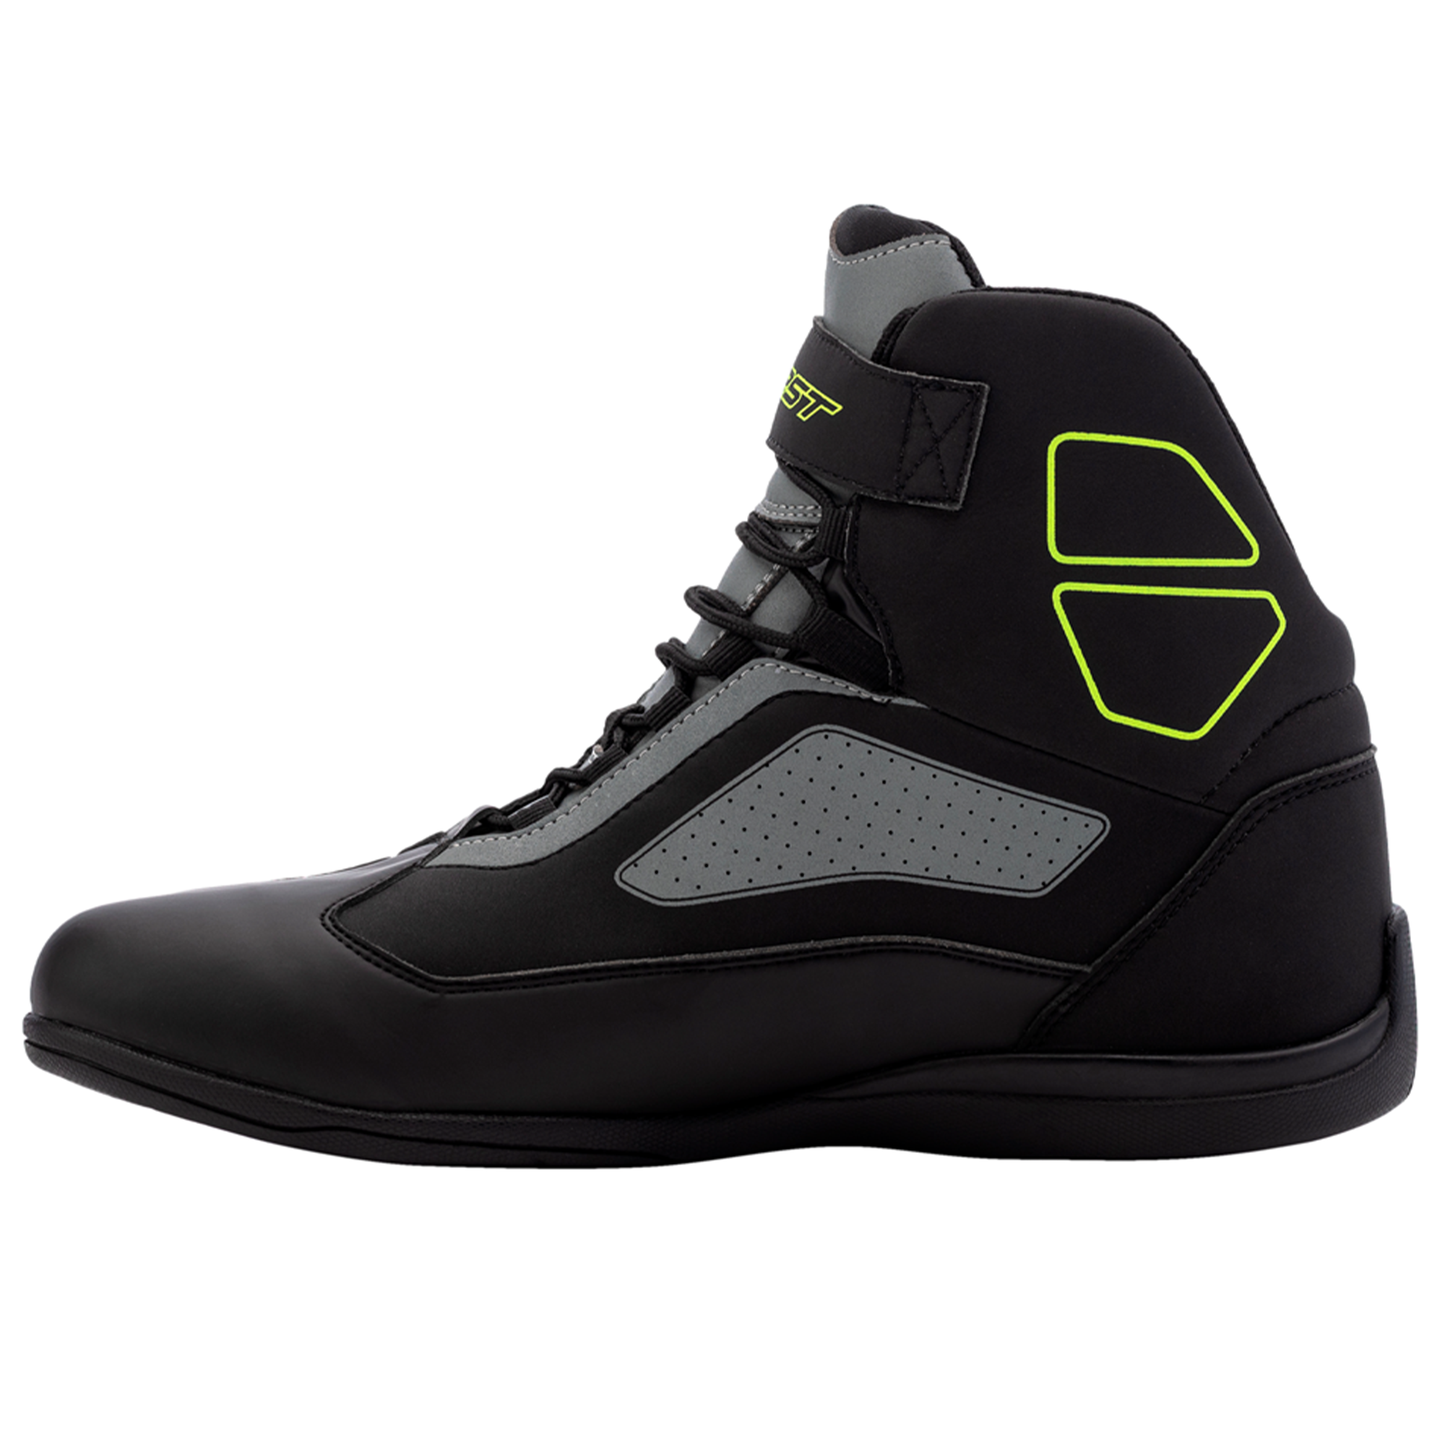 RST Sabre Moto Shoe Men's (CE) Boots - Black/Grey/Flo Yellow (3053)